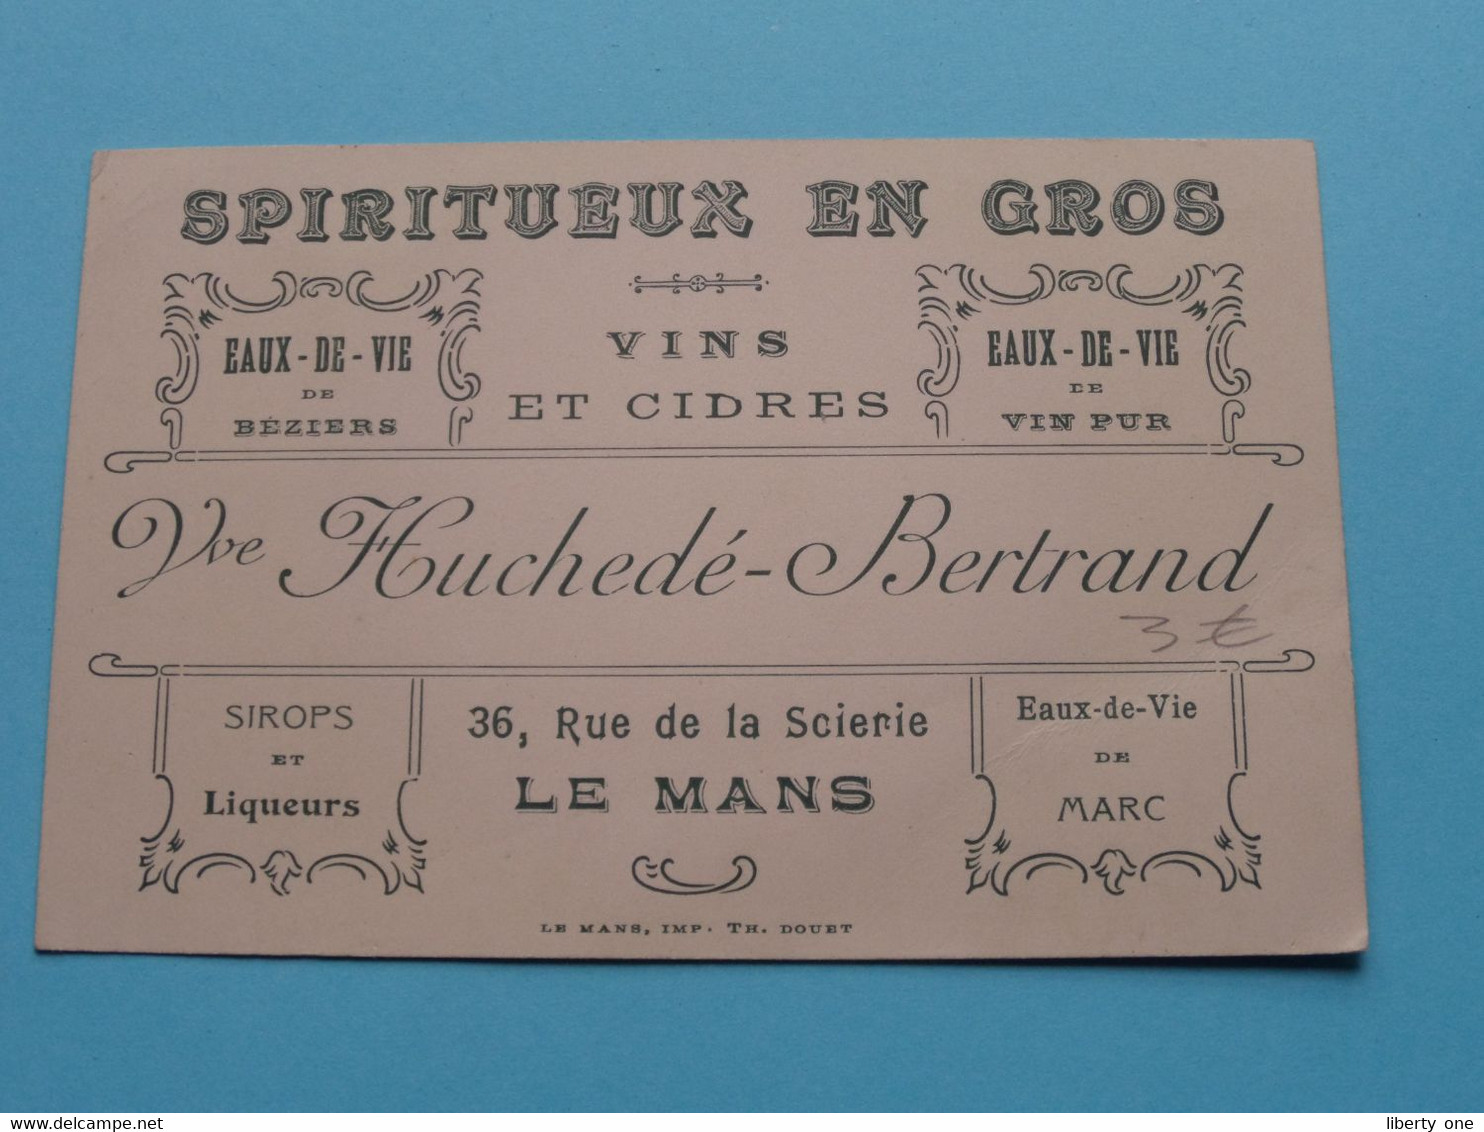 Spiritueux En Gros Vve Huchedé-Betrand à LE MANS ( Voir / Zie Scan ) ! - Visiting Cards